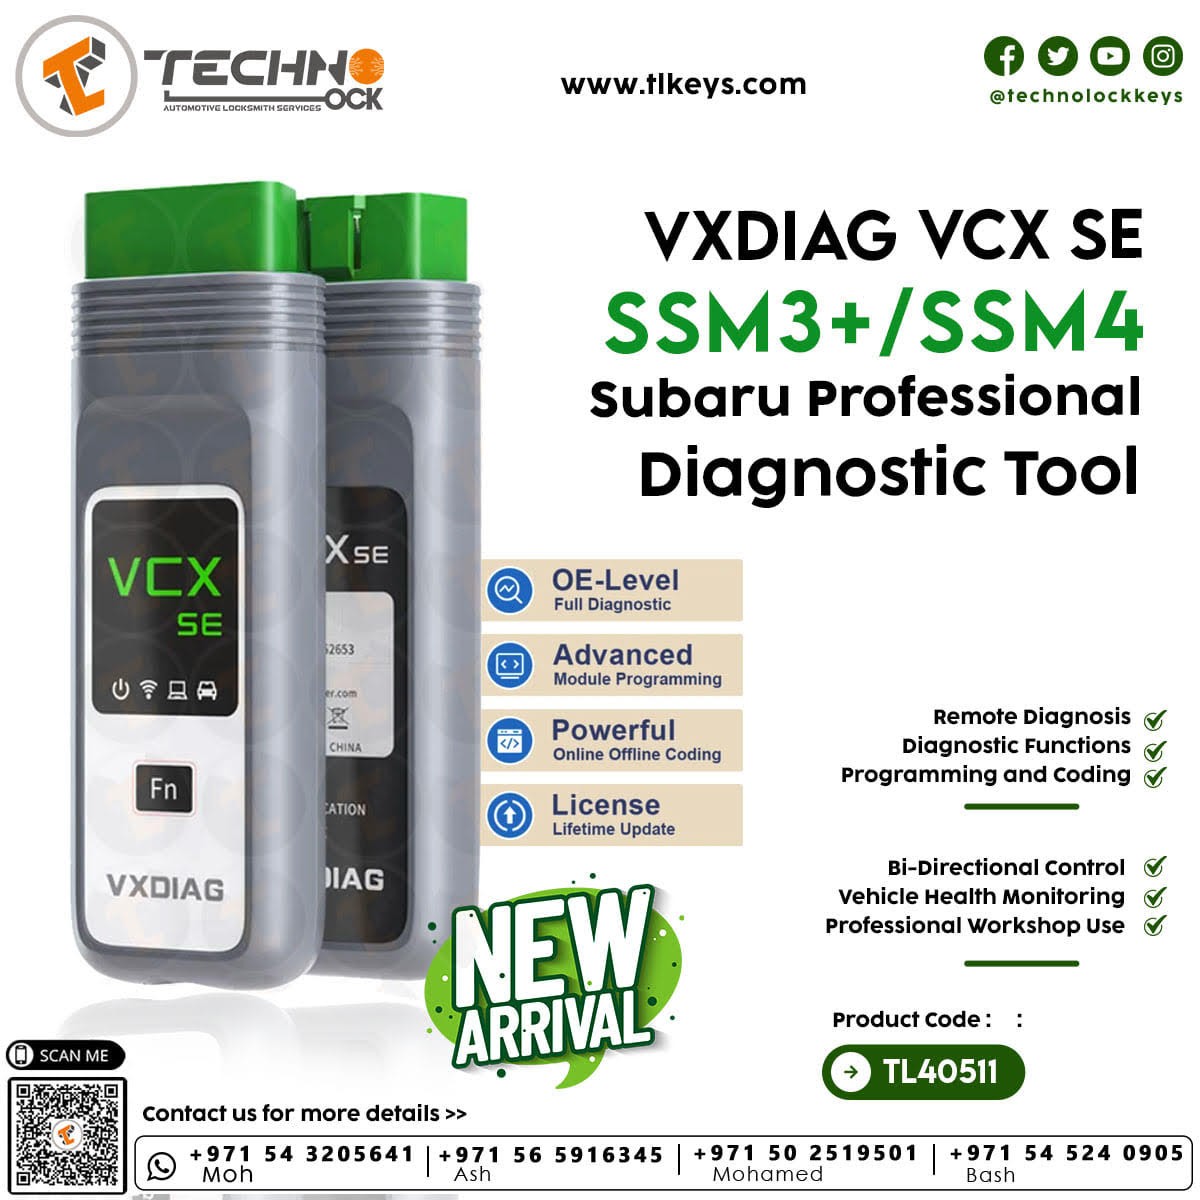 VXDIAG Subaru diagnostic tool